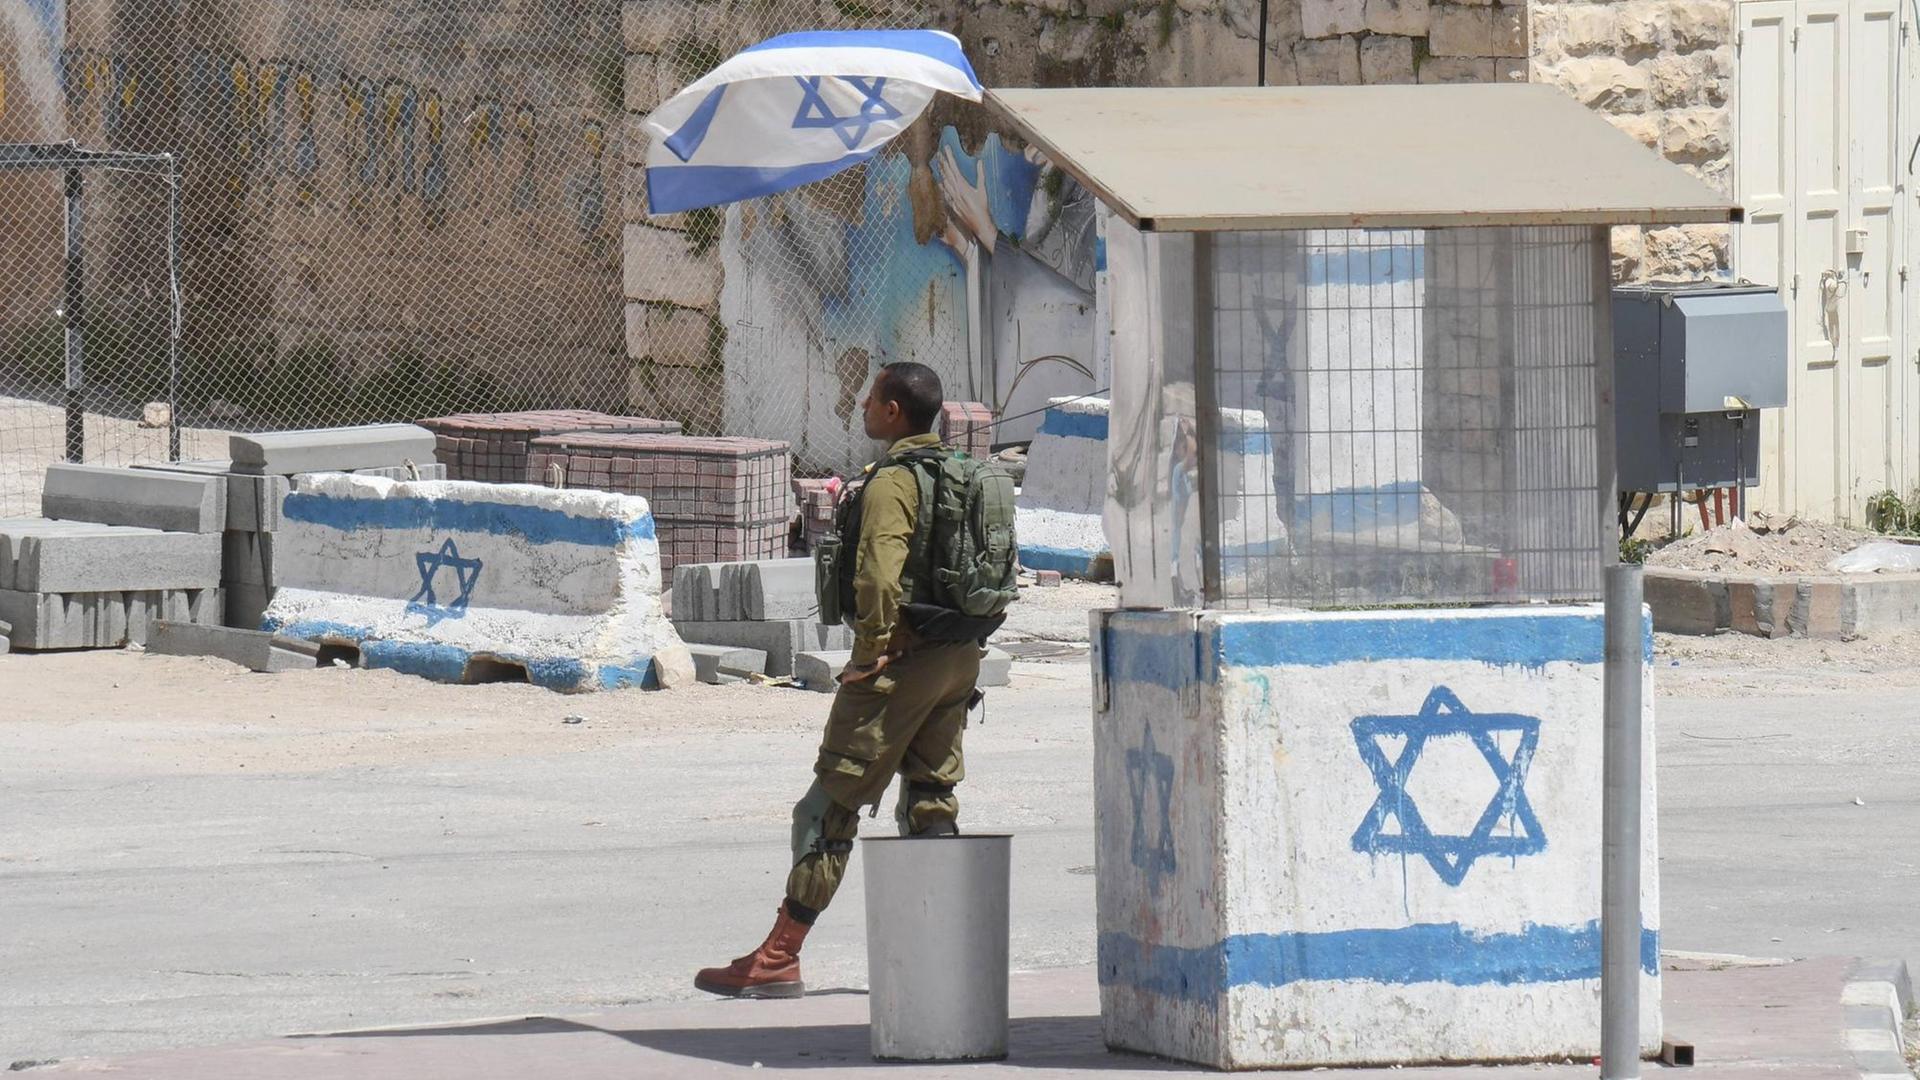 Israelische Kontrollstelle in Hebron im Westjordanland/Palaestina: Ein Israelischer Soldat in Uniform steht vor einem Wachhäuschen, das mit einer gemalten israelischen Flagge angestrichen ist.